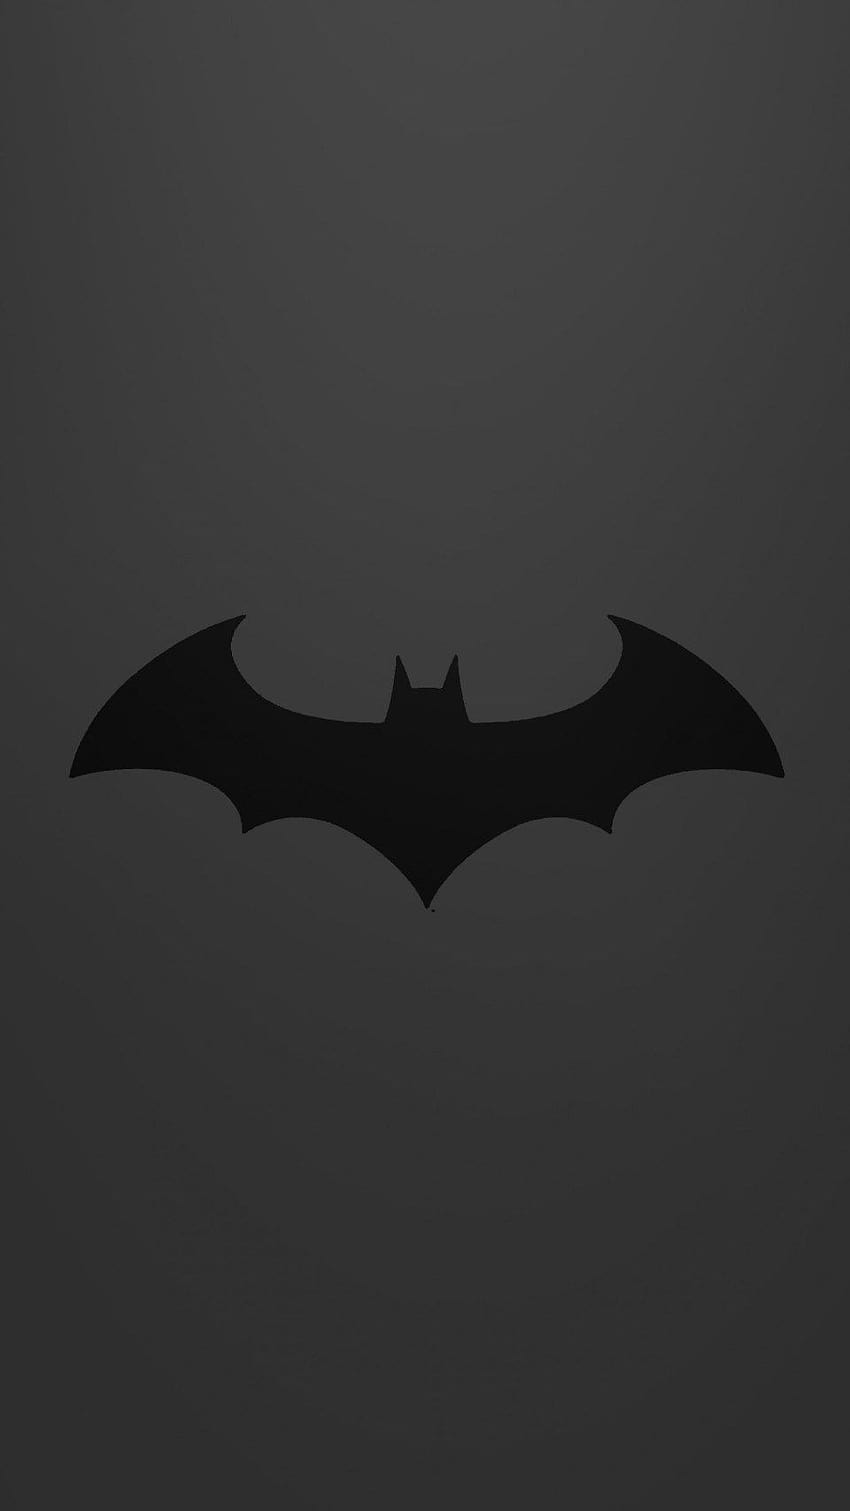 Batman Symbol iPhone Wallpapers  Top Free Batman Symbol iPhone Backgrounds   WallpaperAccess